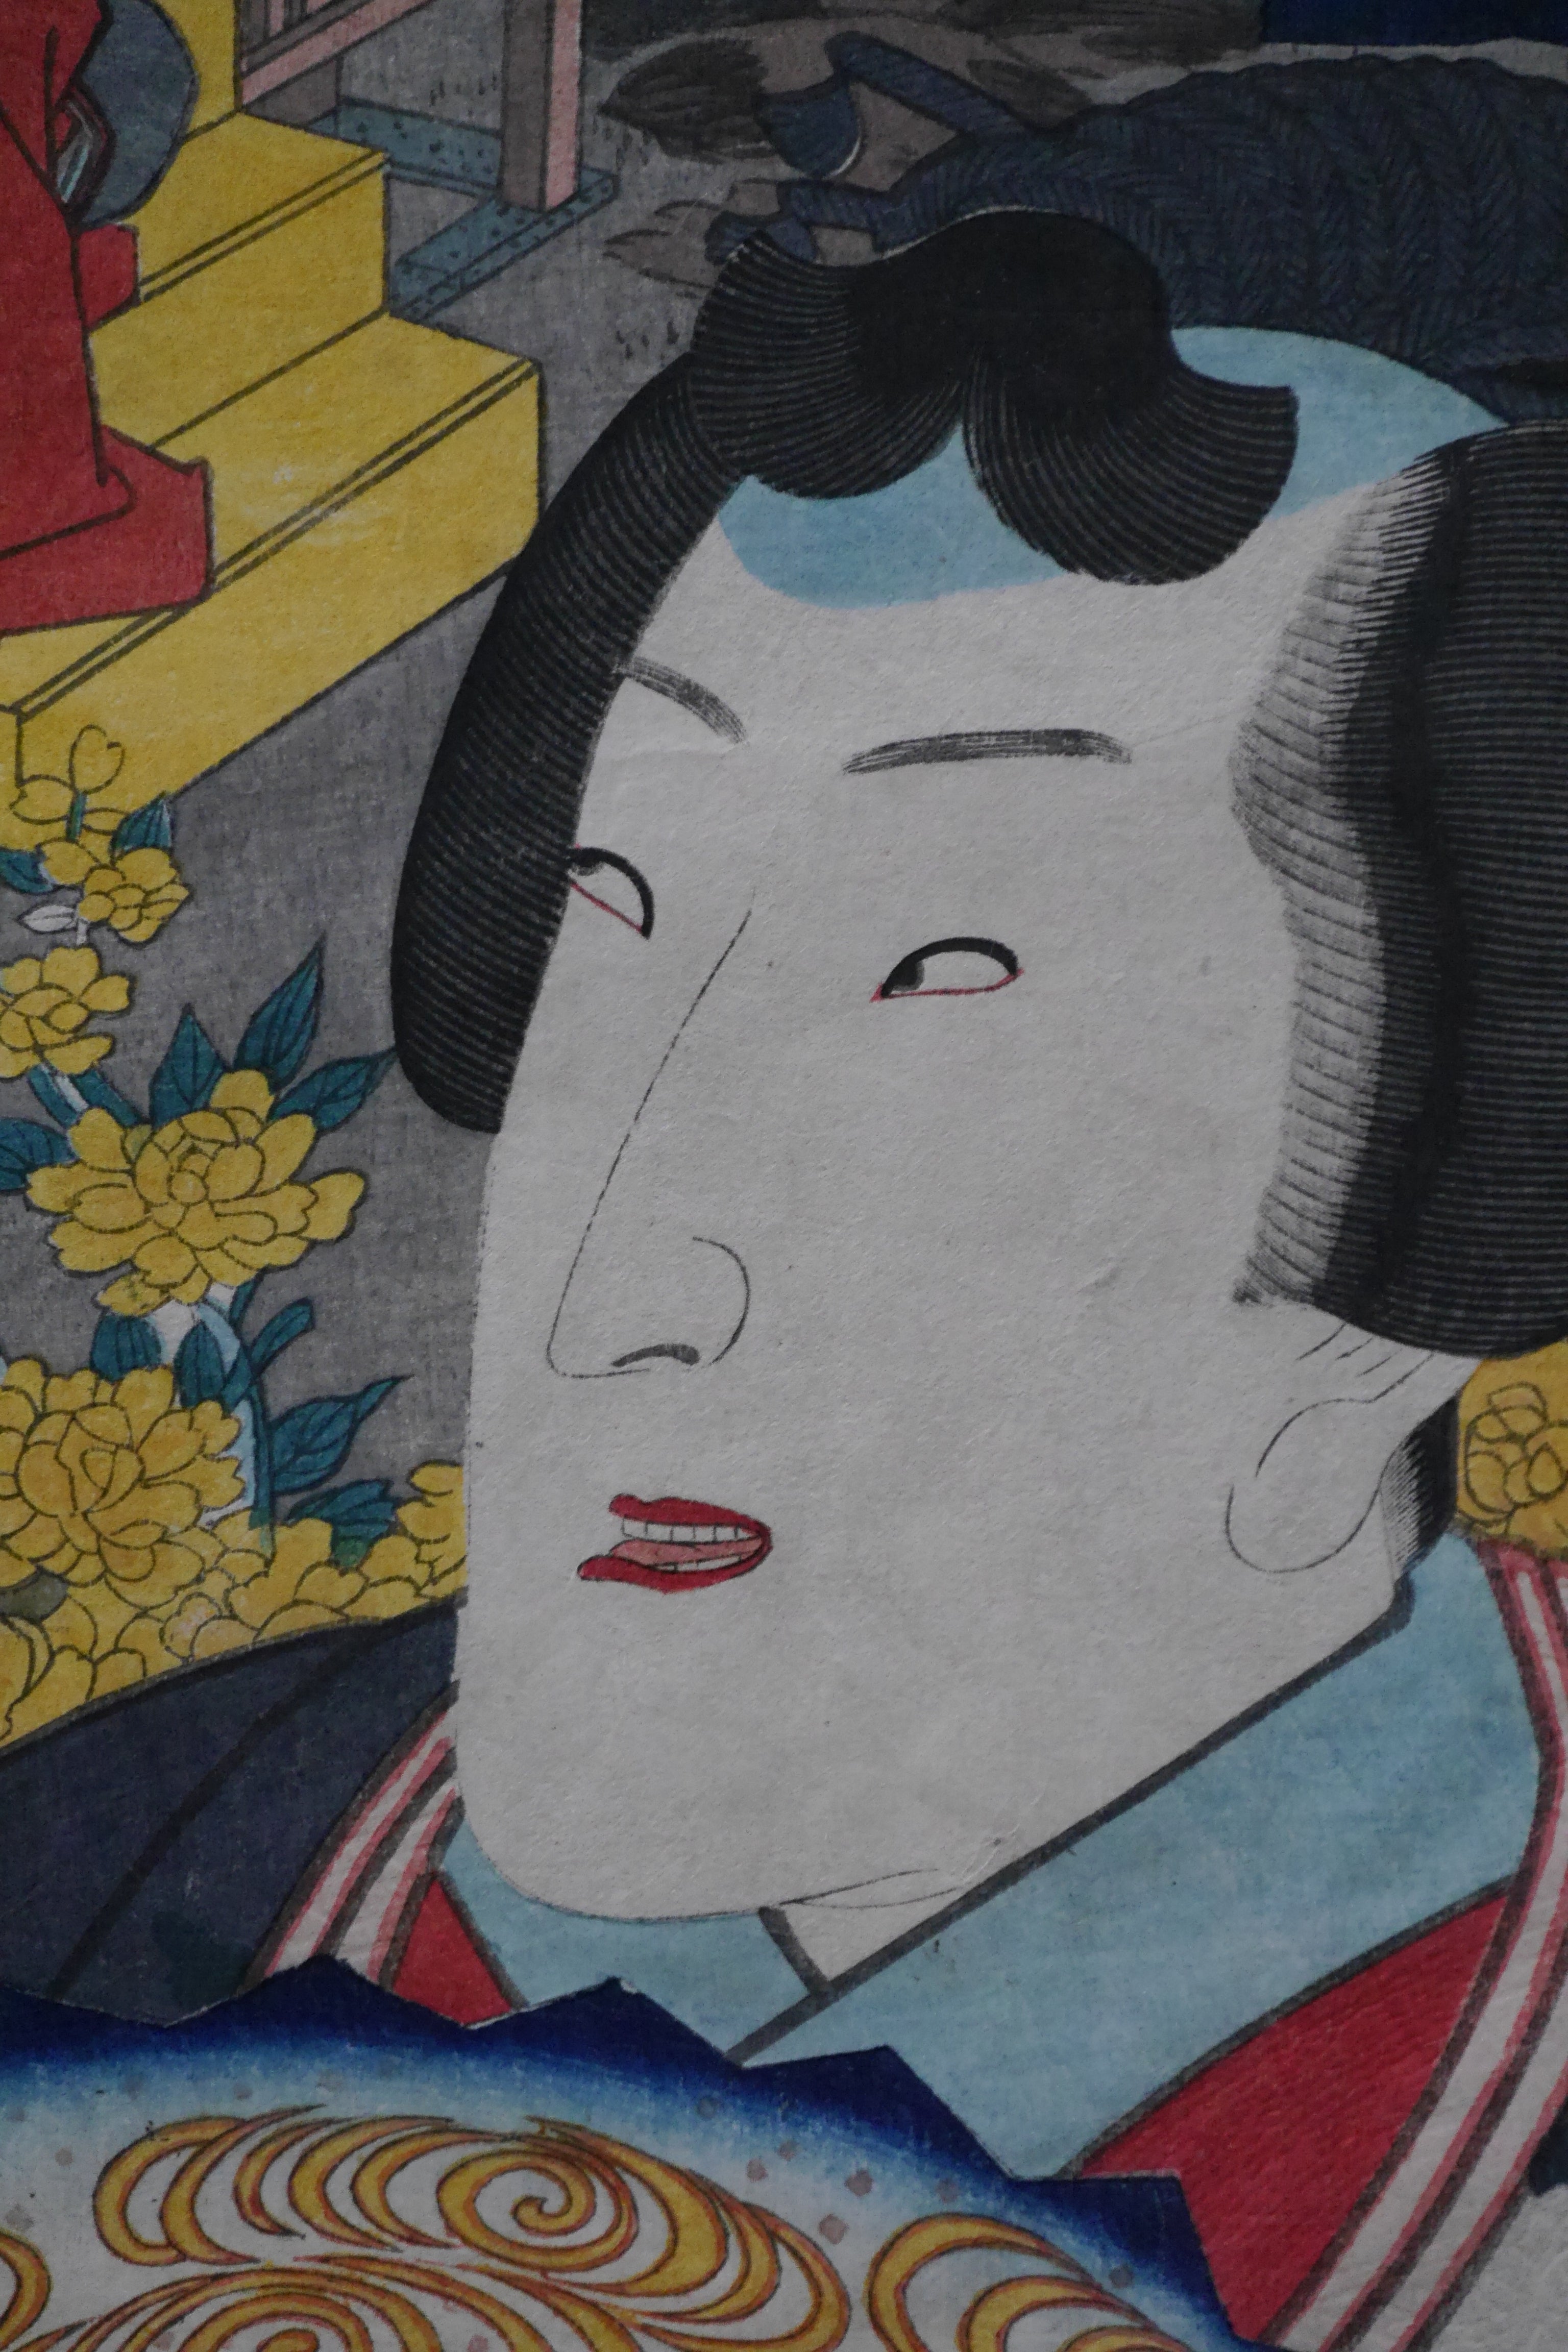 No. 8, Hana no en: Actor Segawa Kikunojô V by Utagawa Kunisada I (Toyokuni III) (1786–1864) and Sadahide Utagawa (1807 - 1873) | Date: 1852 | Japanese Woodblock Print - Ukiyo-e 浮世絵  | 36,3 cm x 25,3 cm